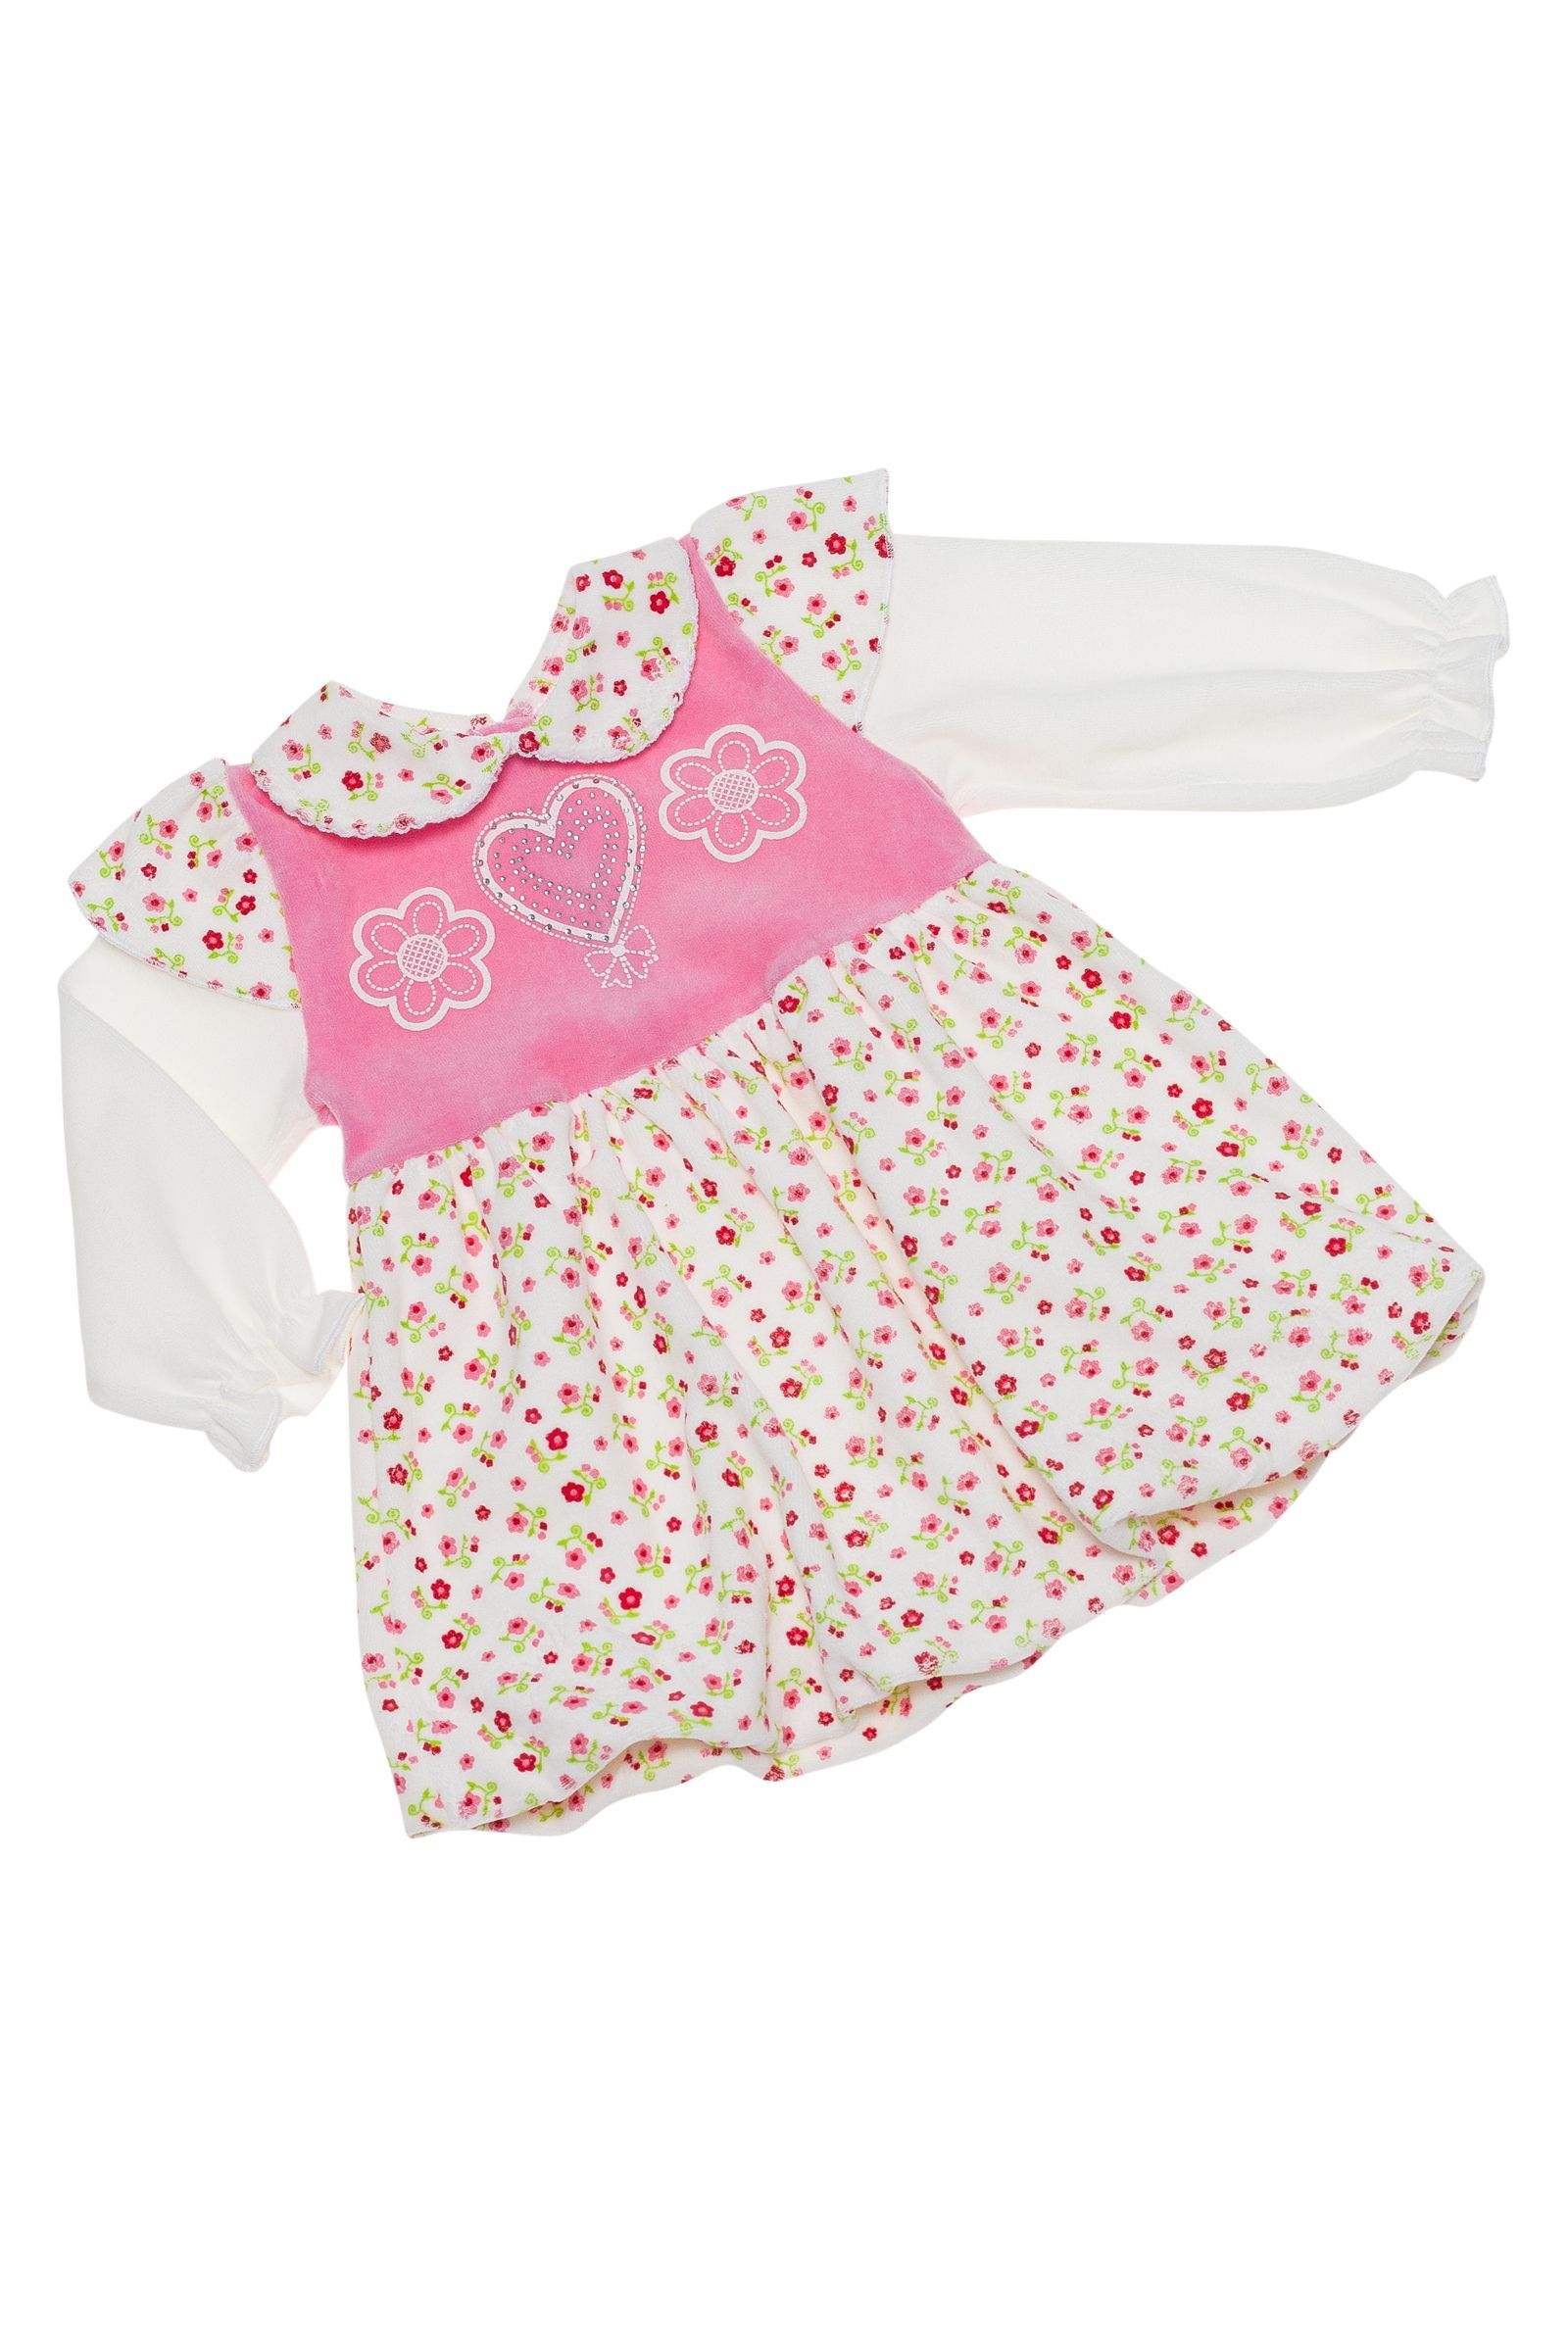 Платье-ПЛ04-1599 оптом от производителя детской одежды 'Алёна'